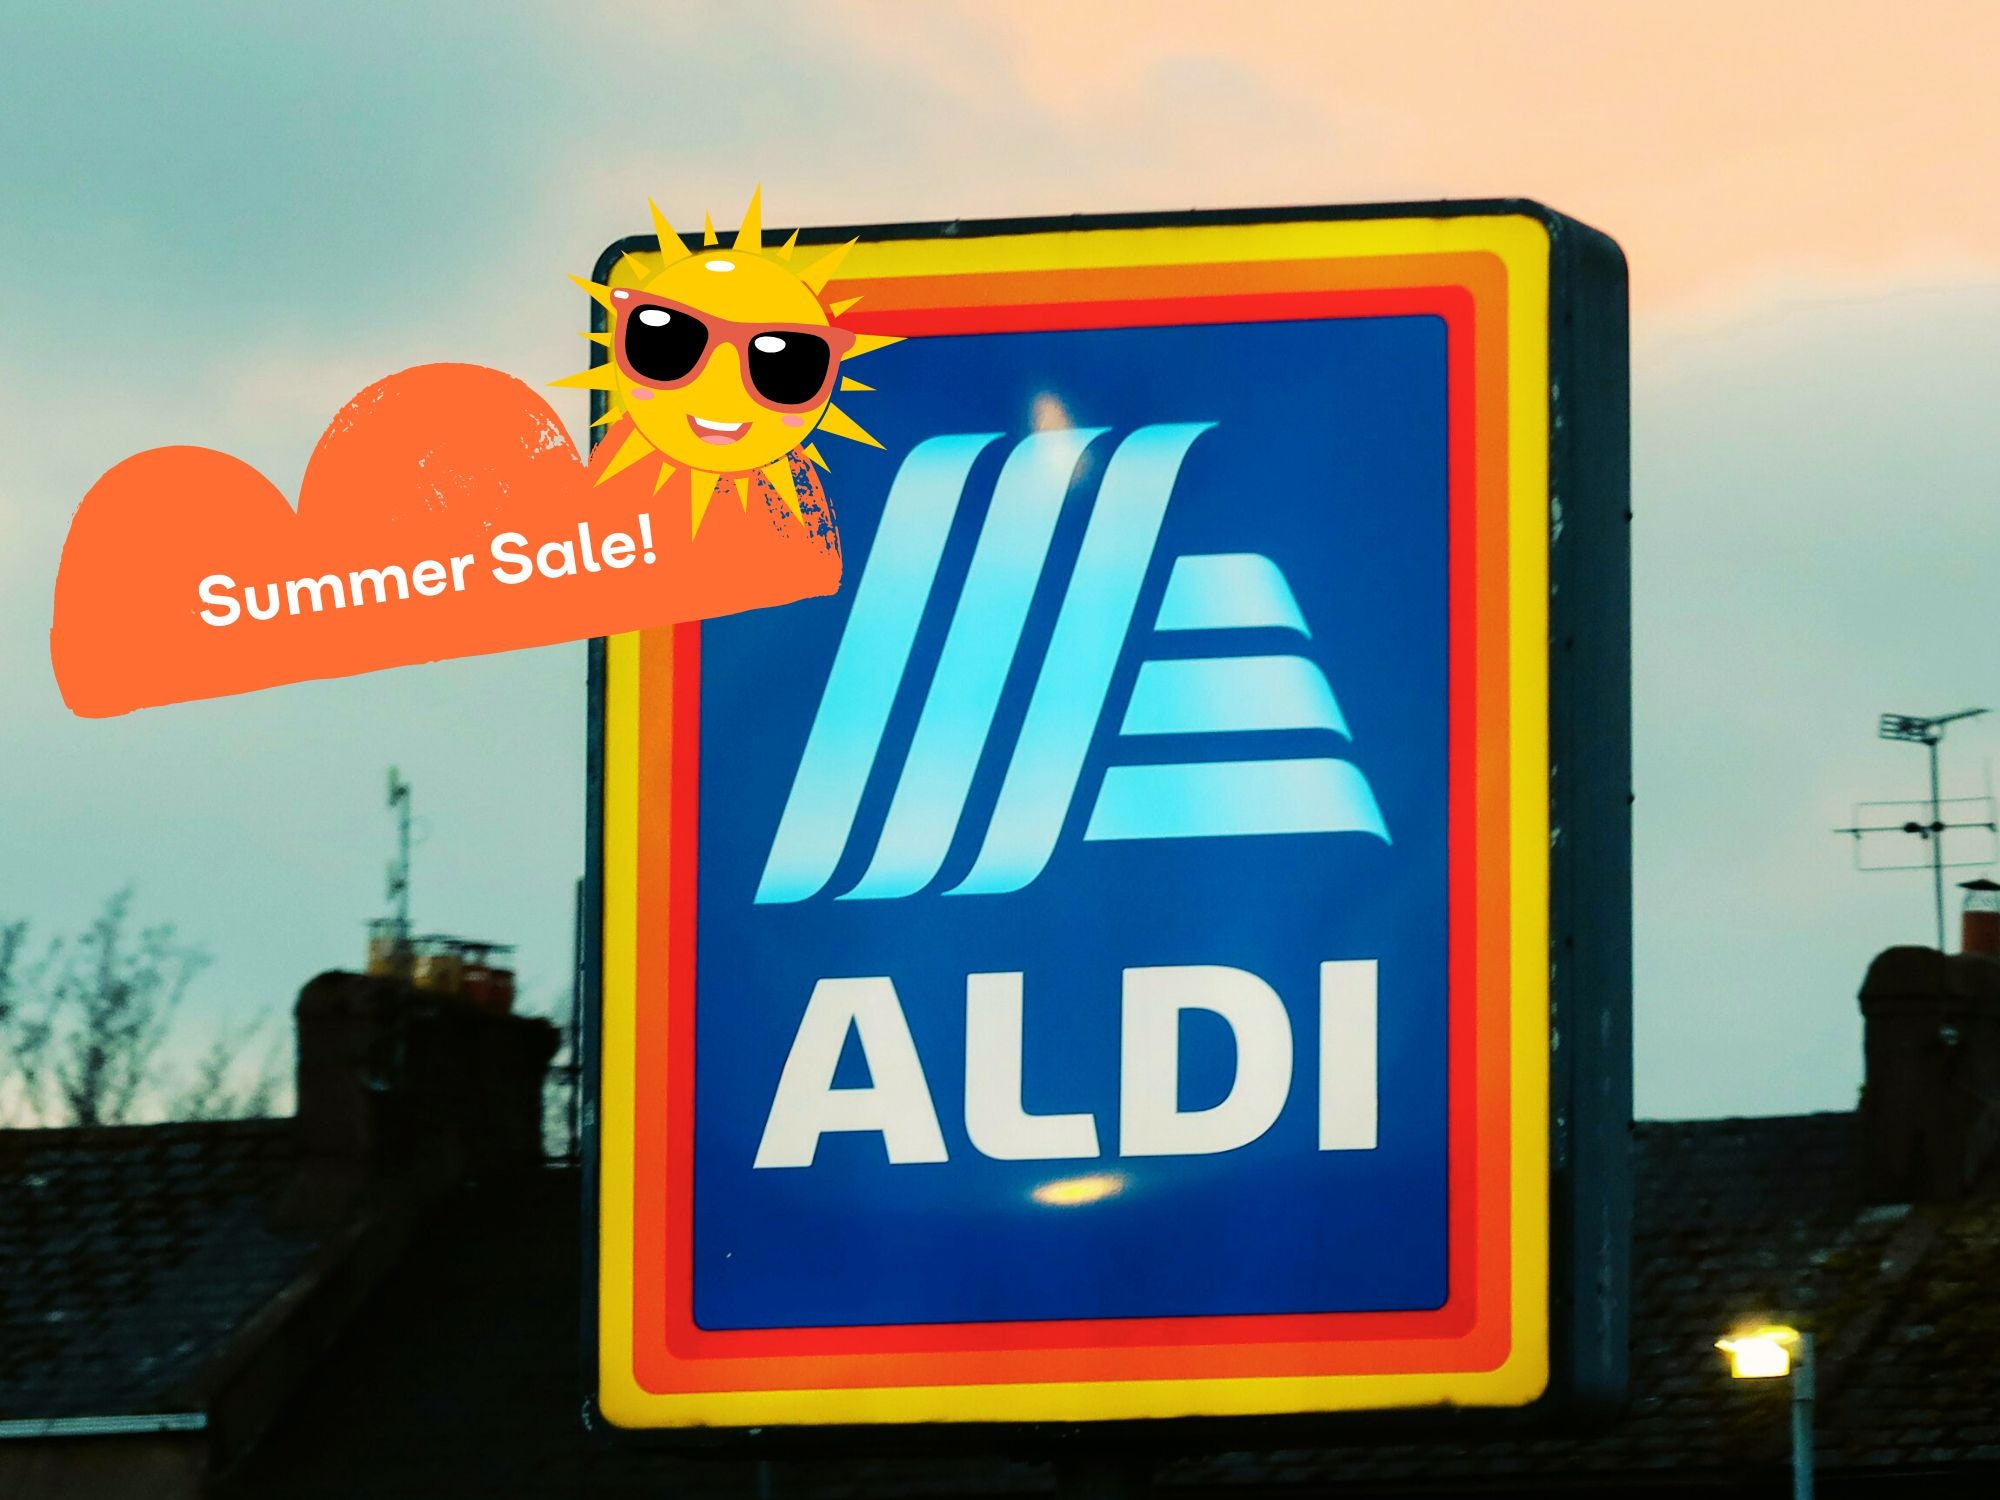 Großer Summer-Sale bei Aldi gestartet - Das sind die besten Deals